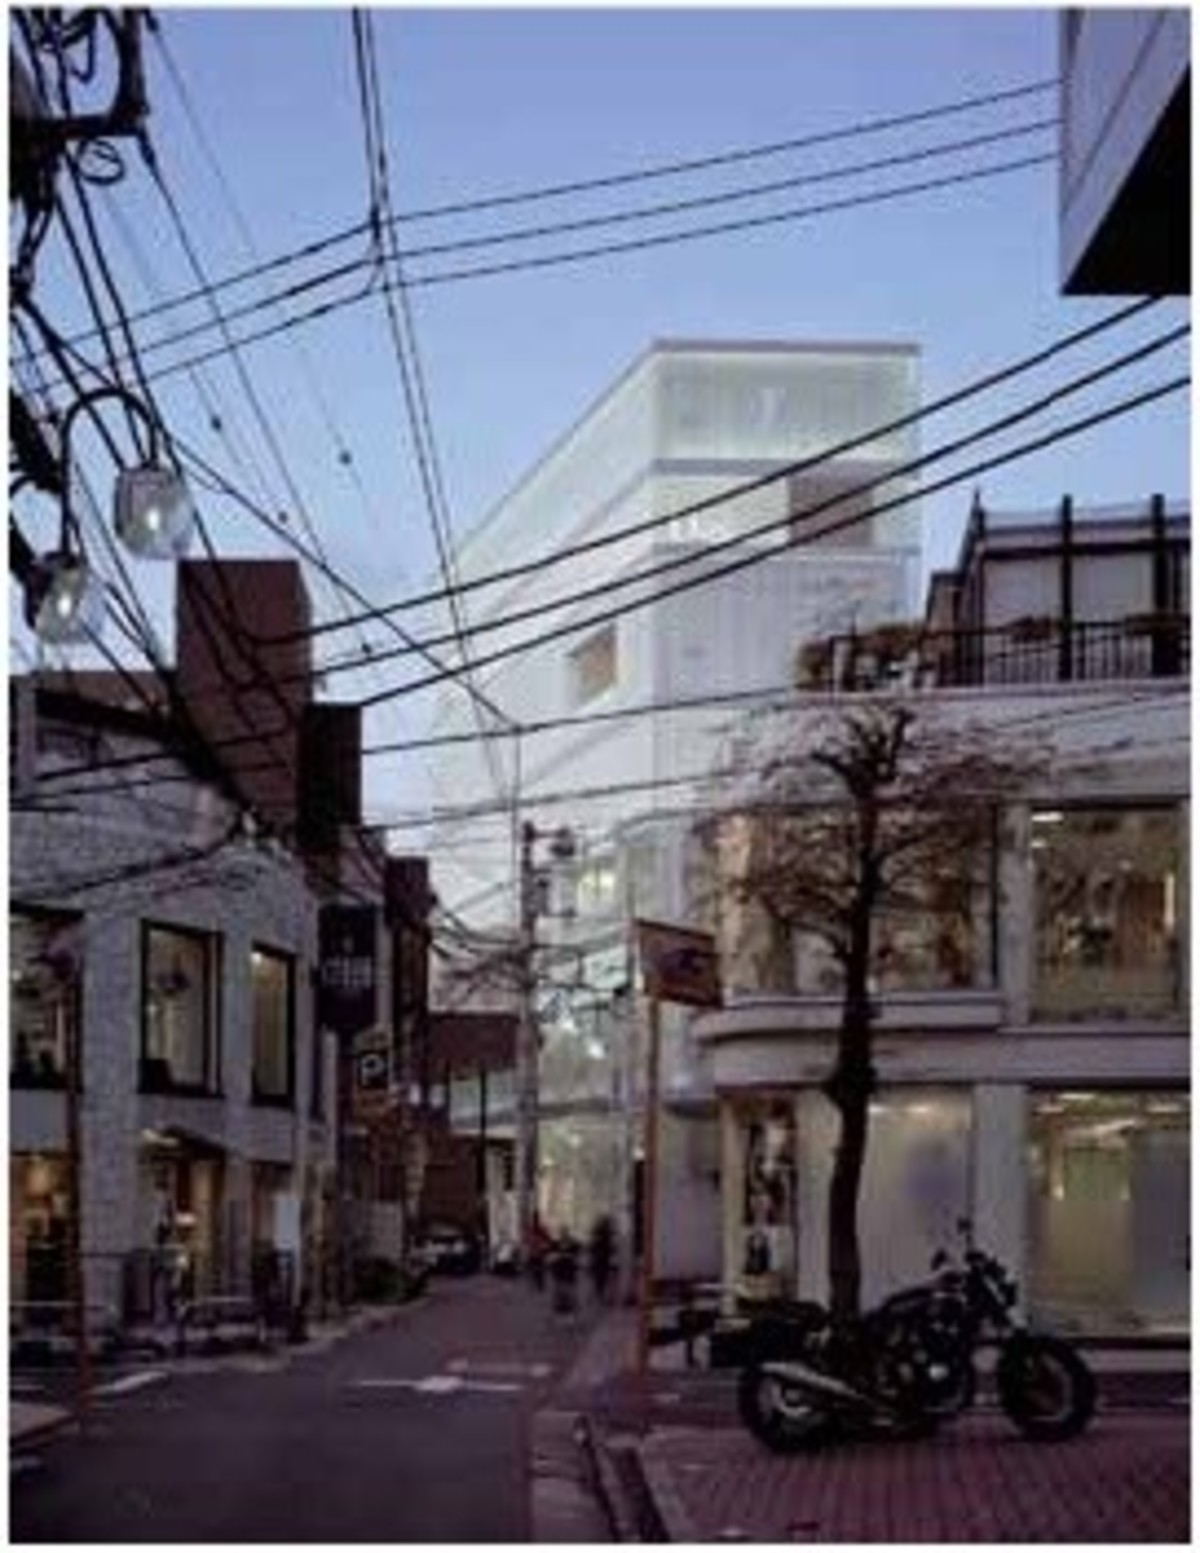 Christian Dior Building - projekta SANAA, fot.: Hisao Suzuki, udostępnione przez SANAA